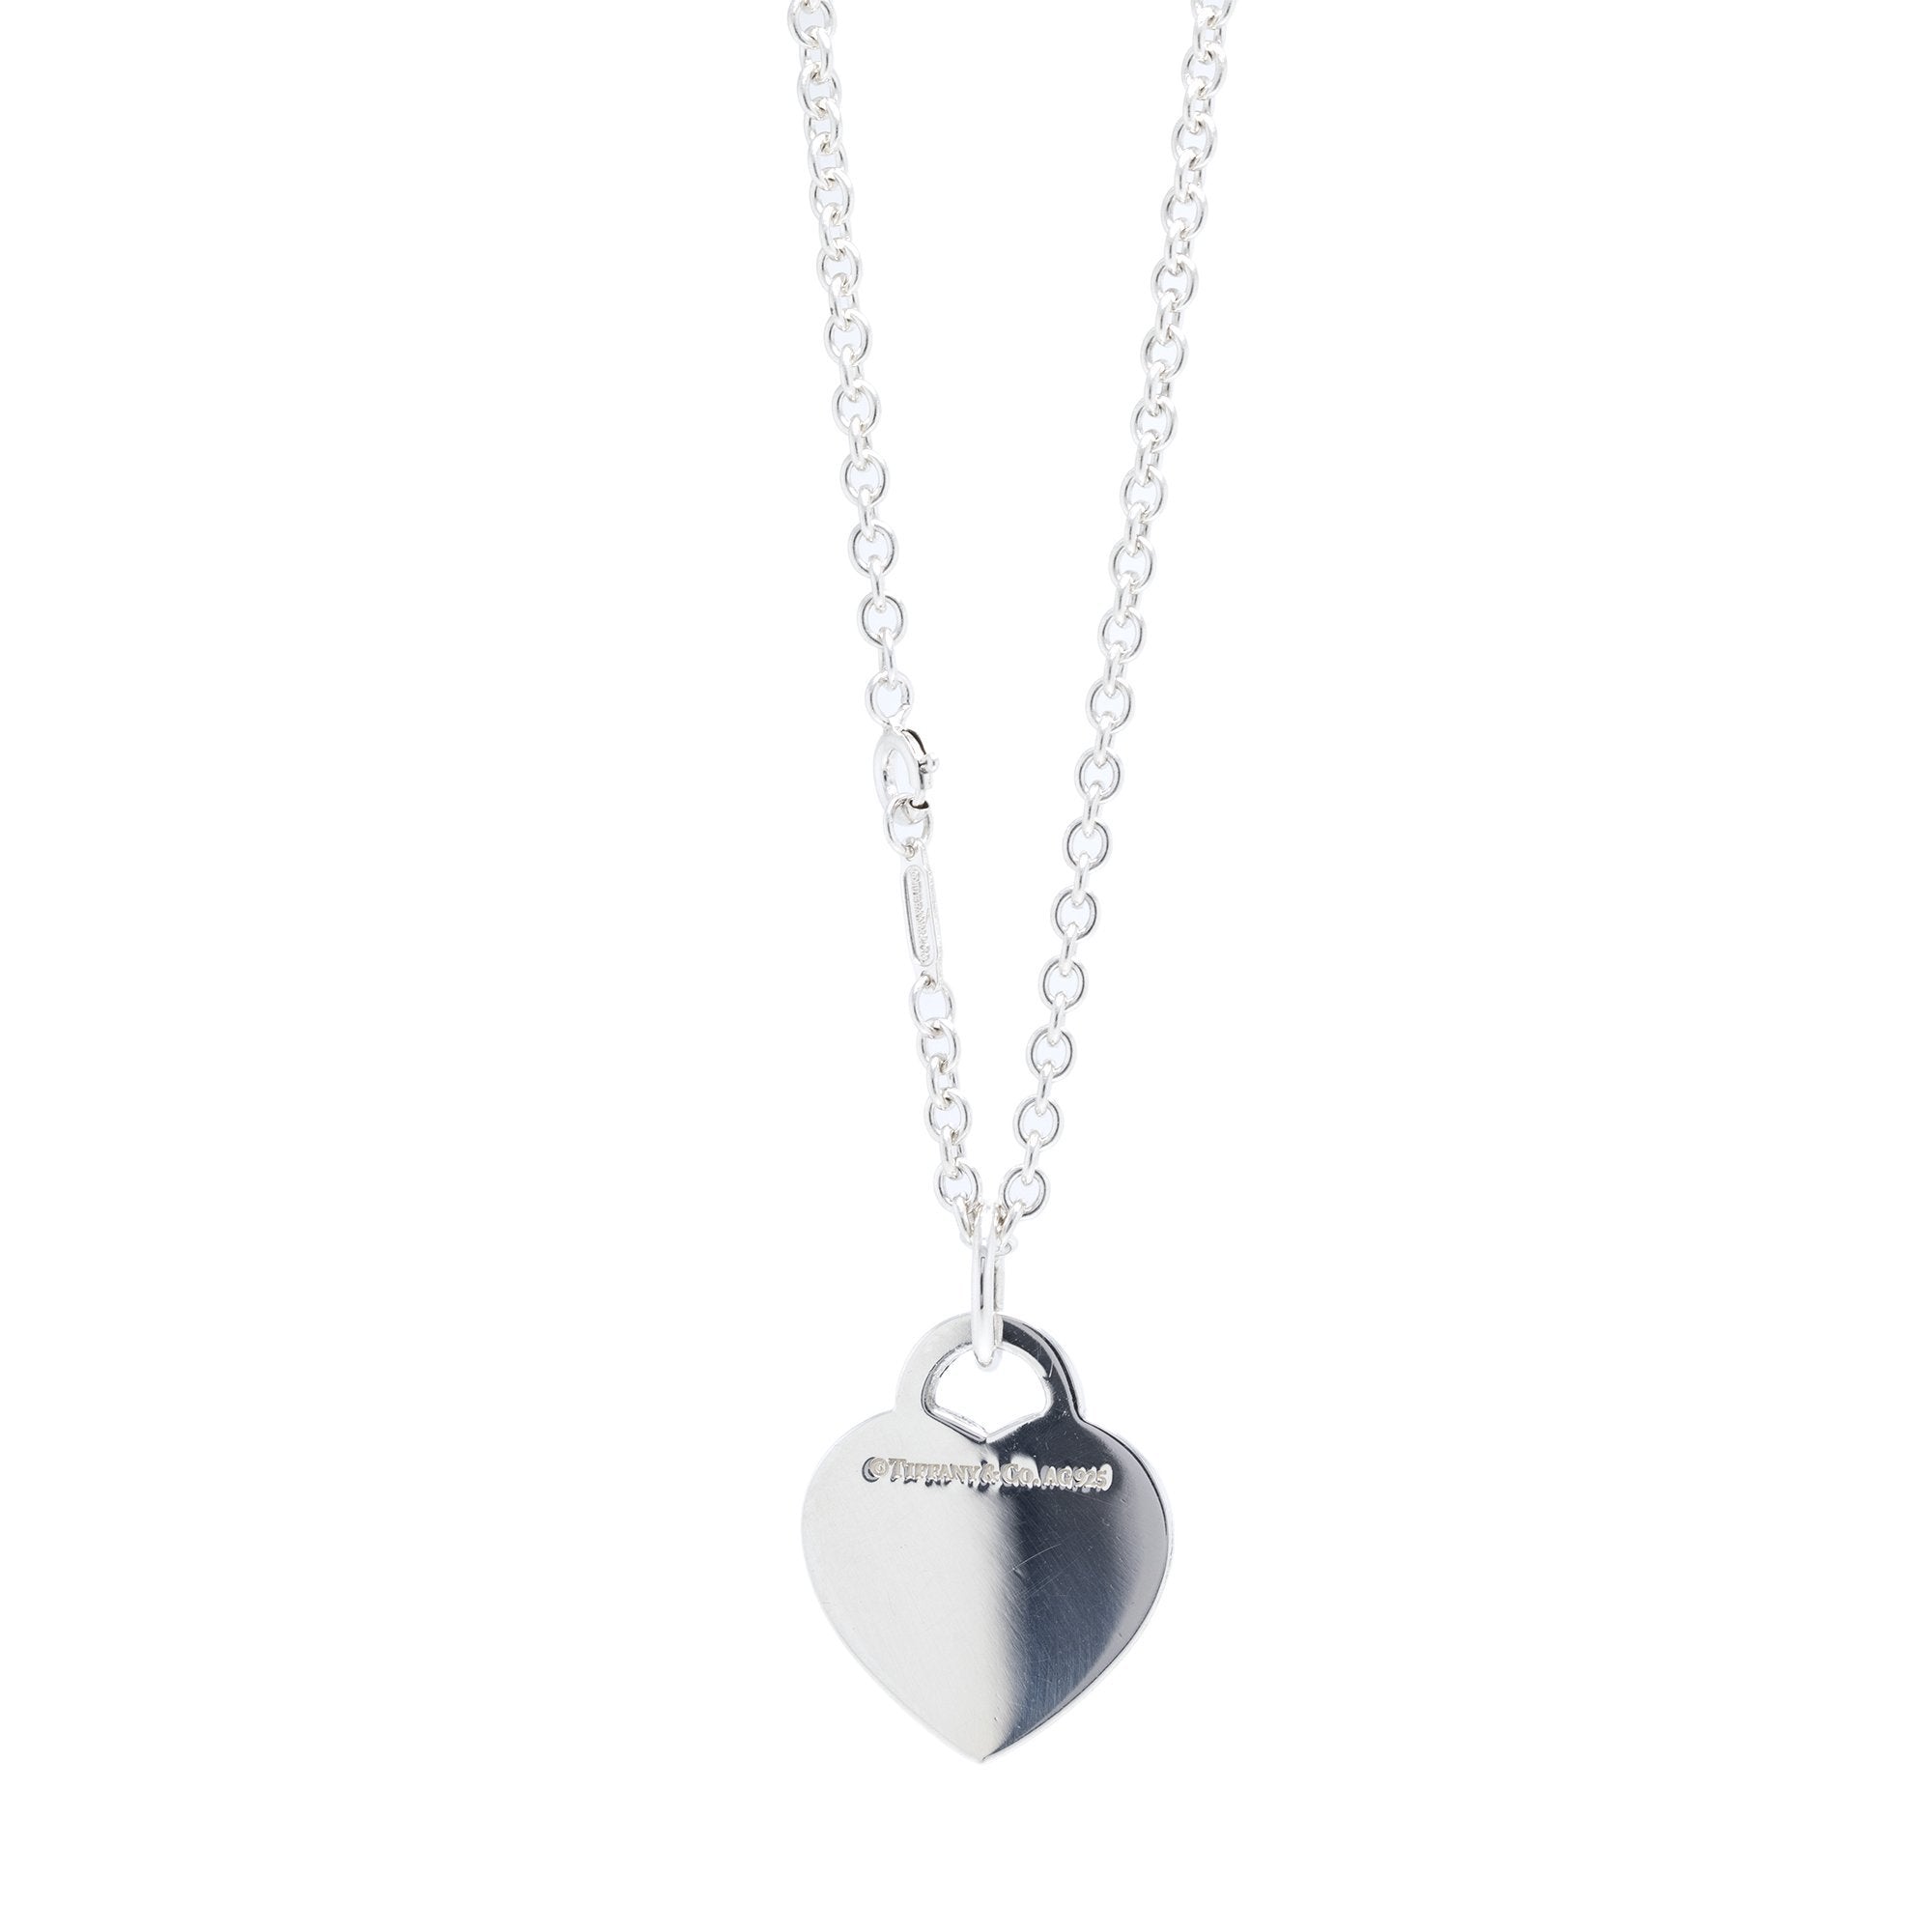 Tiffany & Co Silver Triple Heart Necklace Pendant 17.9 inch Chain Rare Gift  Love